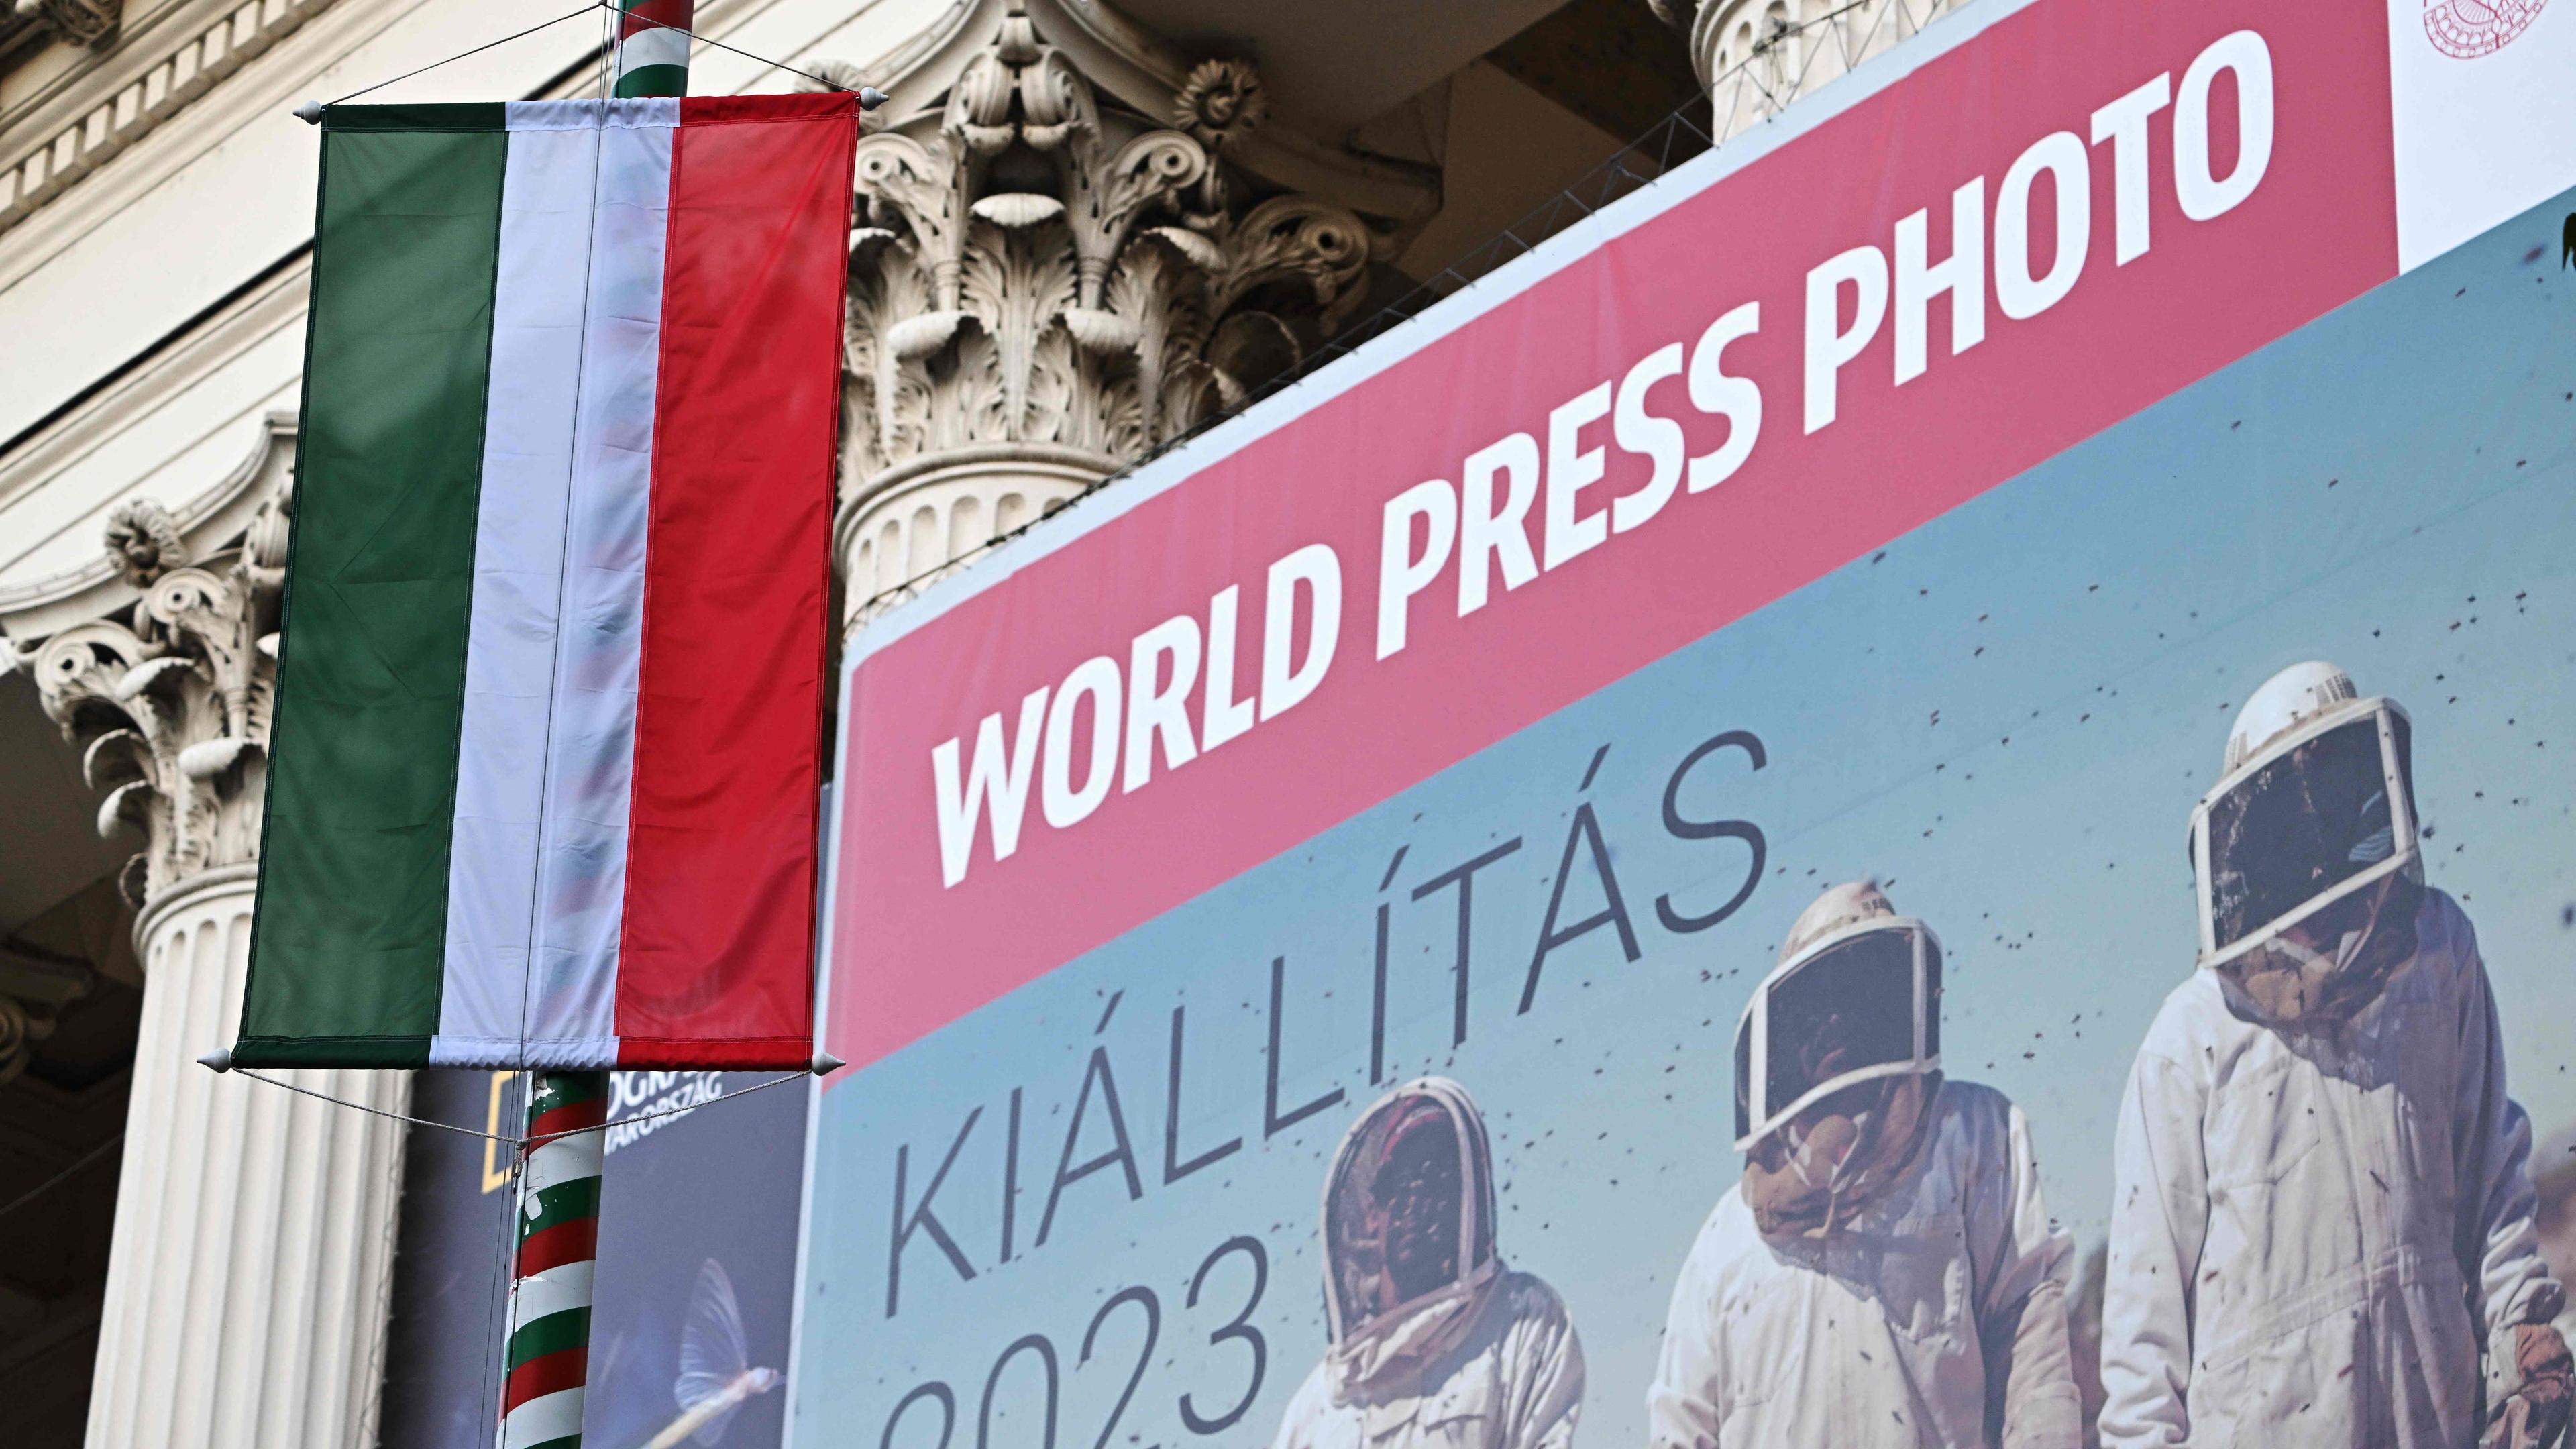 Vor dem Eingang des ungarischen Nationalmuseums macht ein großes Plakat auf die Ausstellung der internationalen Stiftung World Press Photo aufmerksam